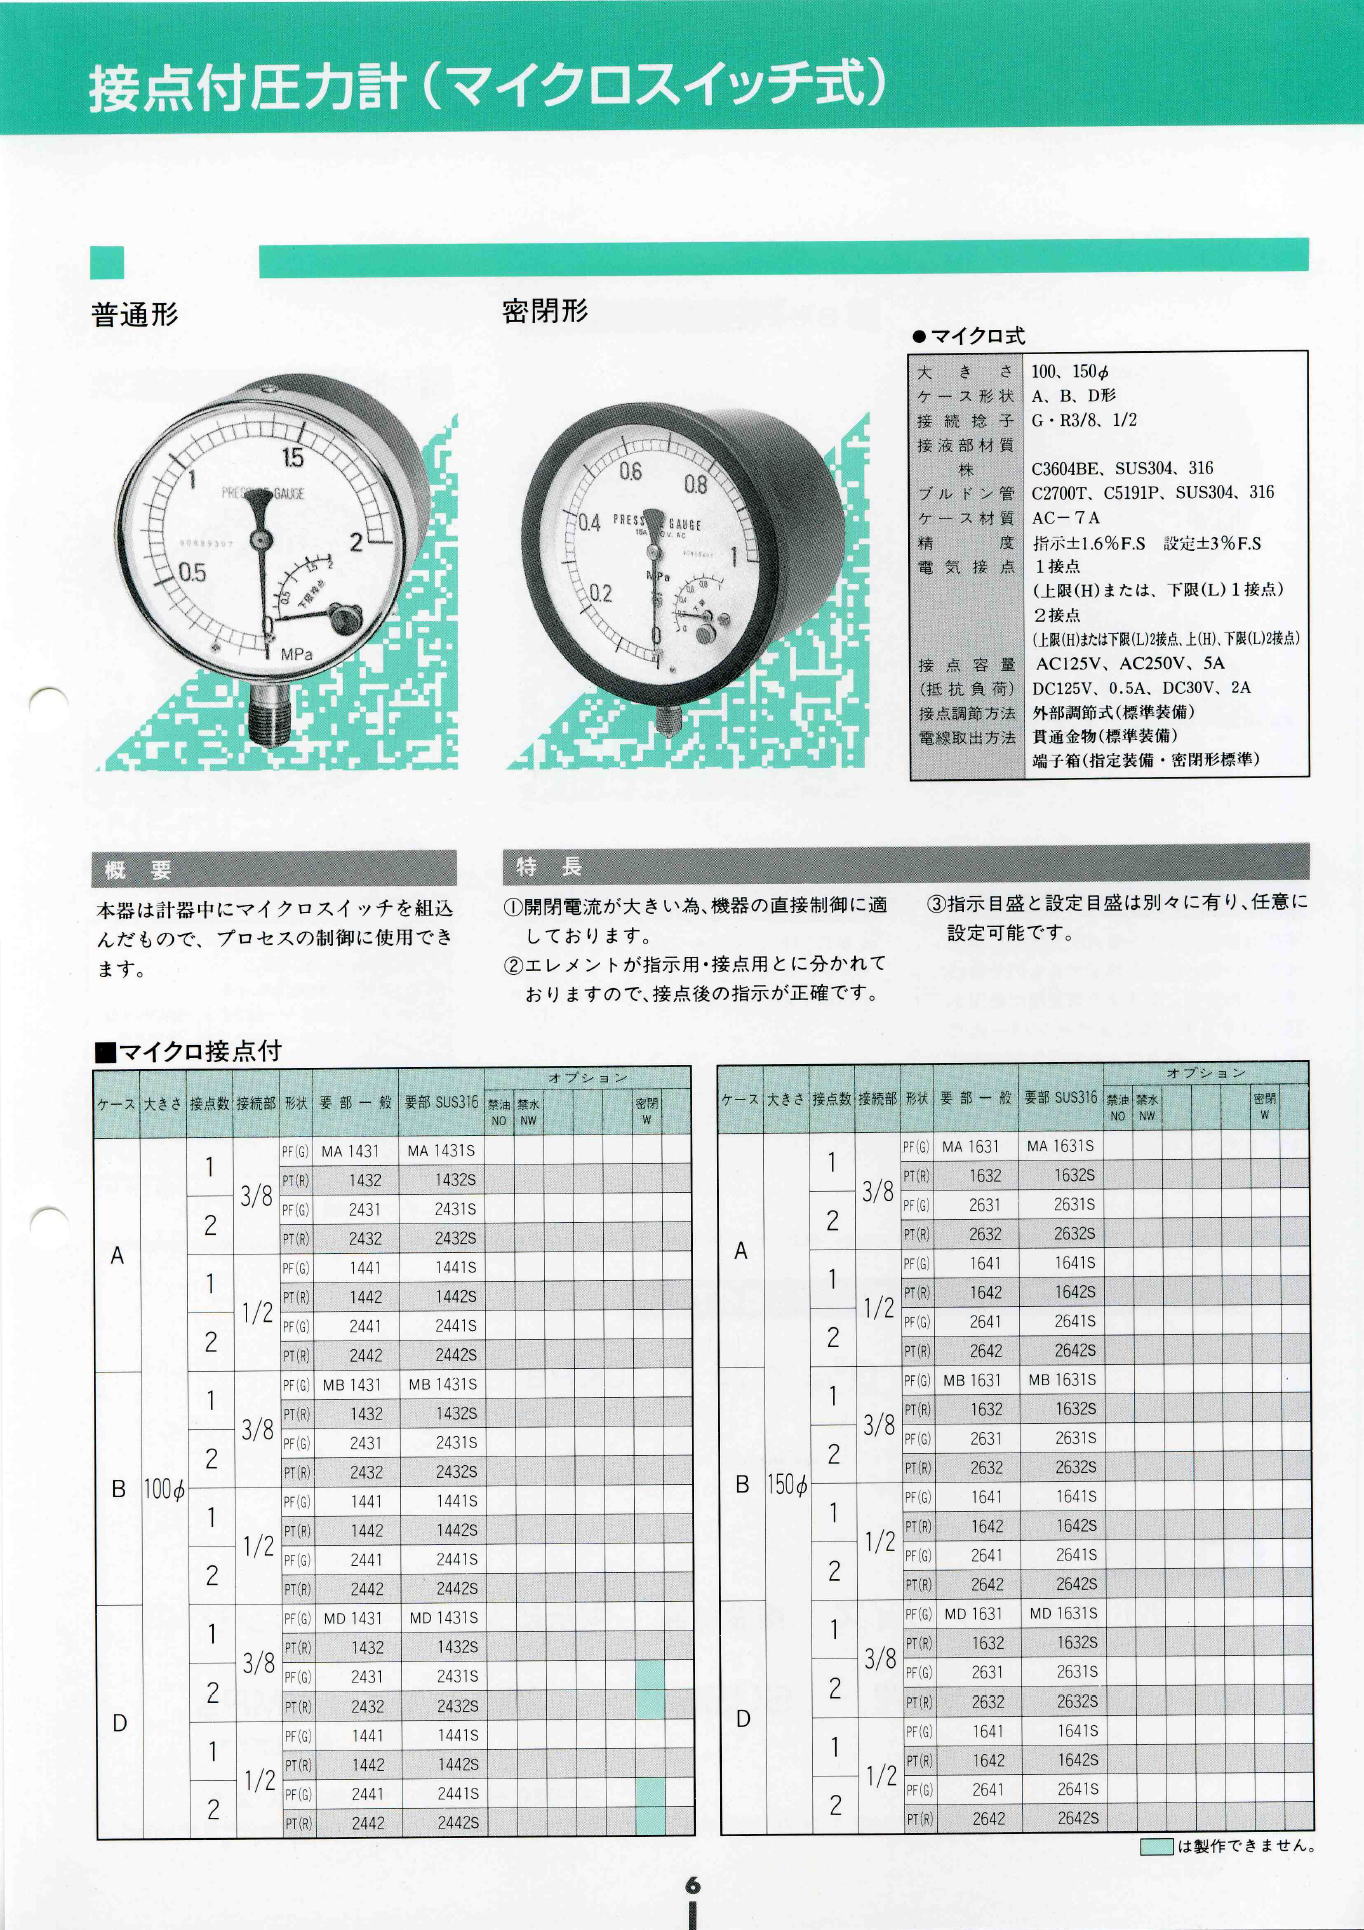 株式会社西野製作所　接点付圧力計（マイクロスイッチ式）　Pressure gauge with contacts (micro switch type)